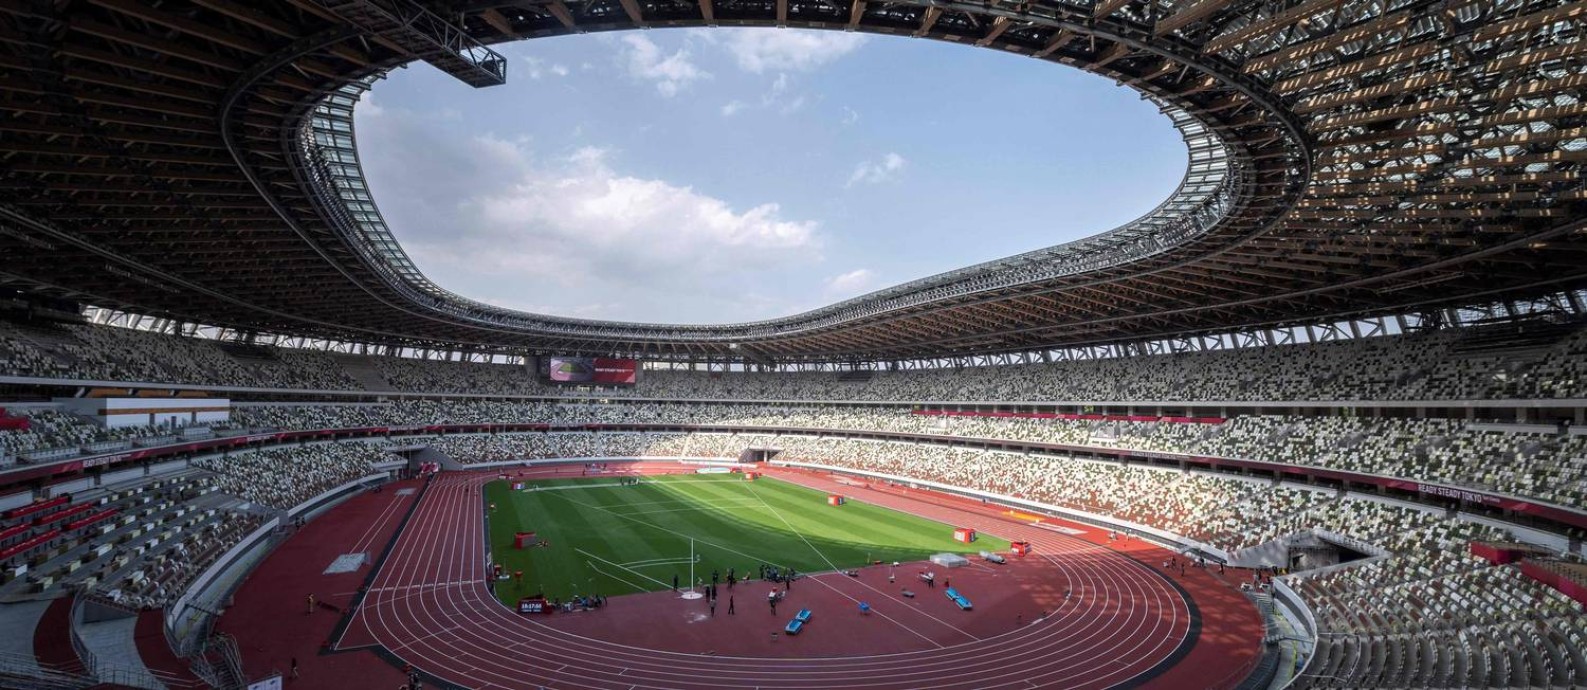 Estádio Nacional de Tóquio custou cerca de US$ 1,4 bilhão Foto: CHARLY TRIBALLEAU / AFP